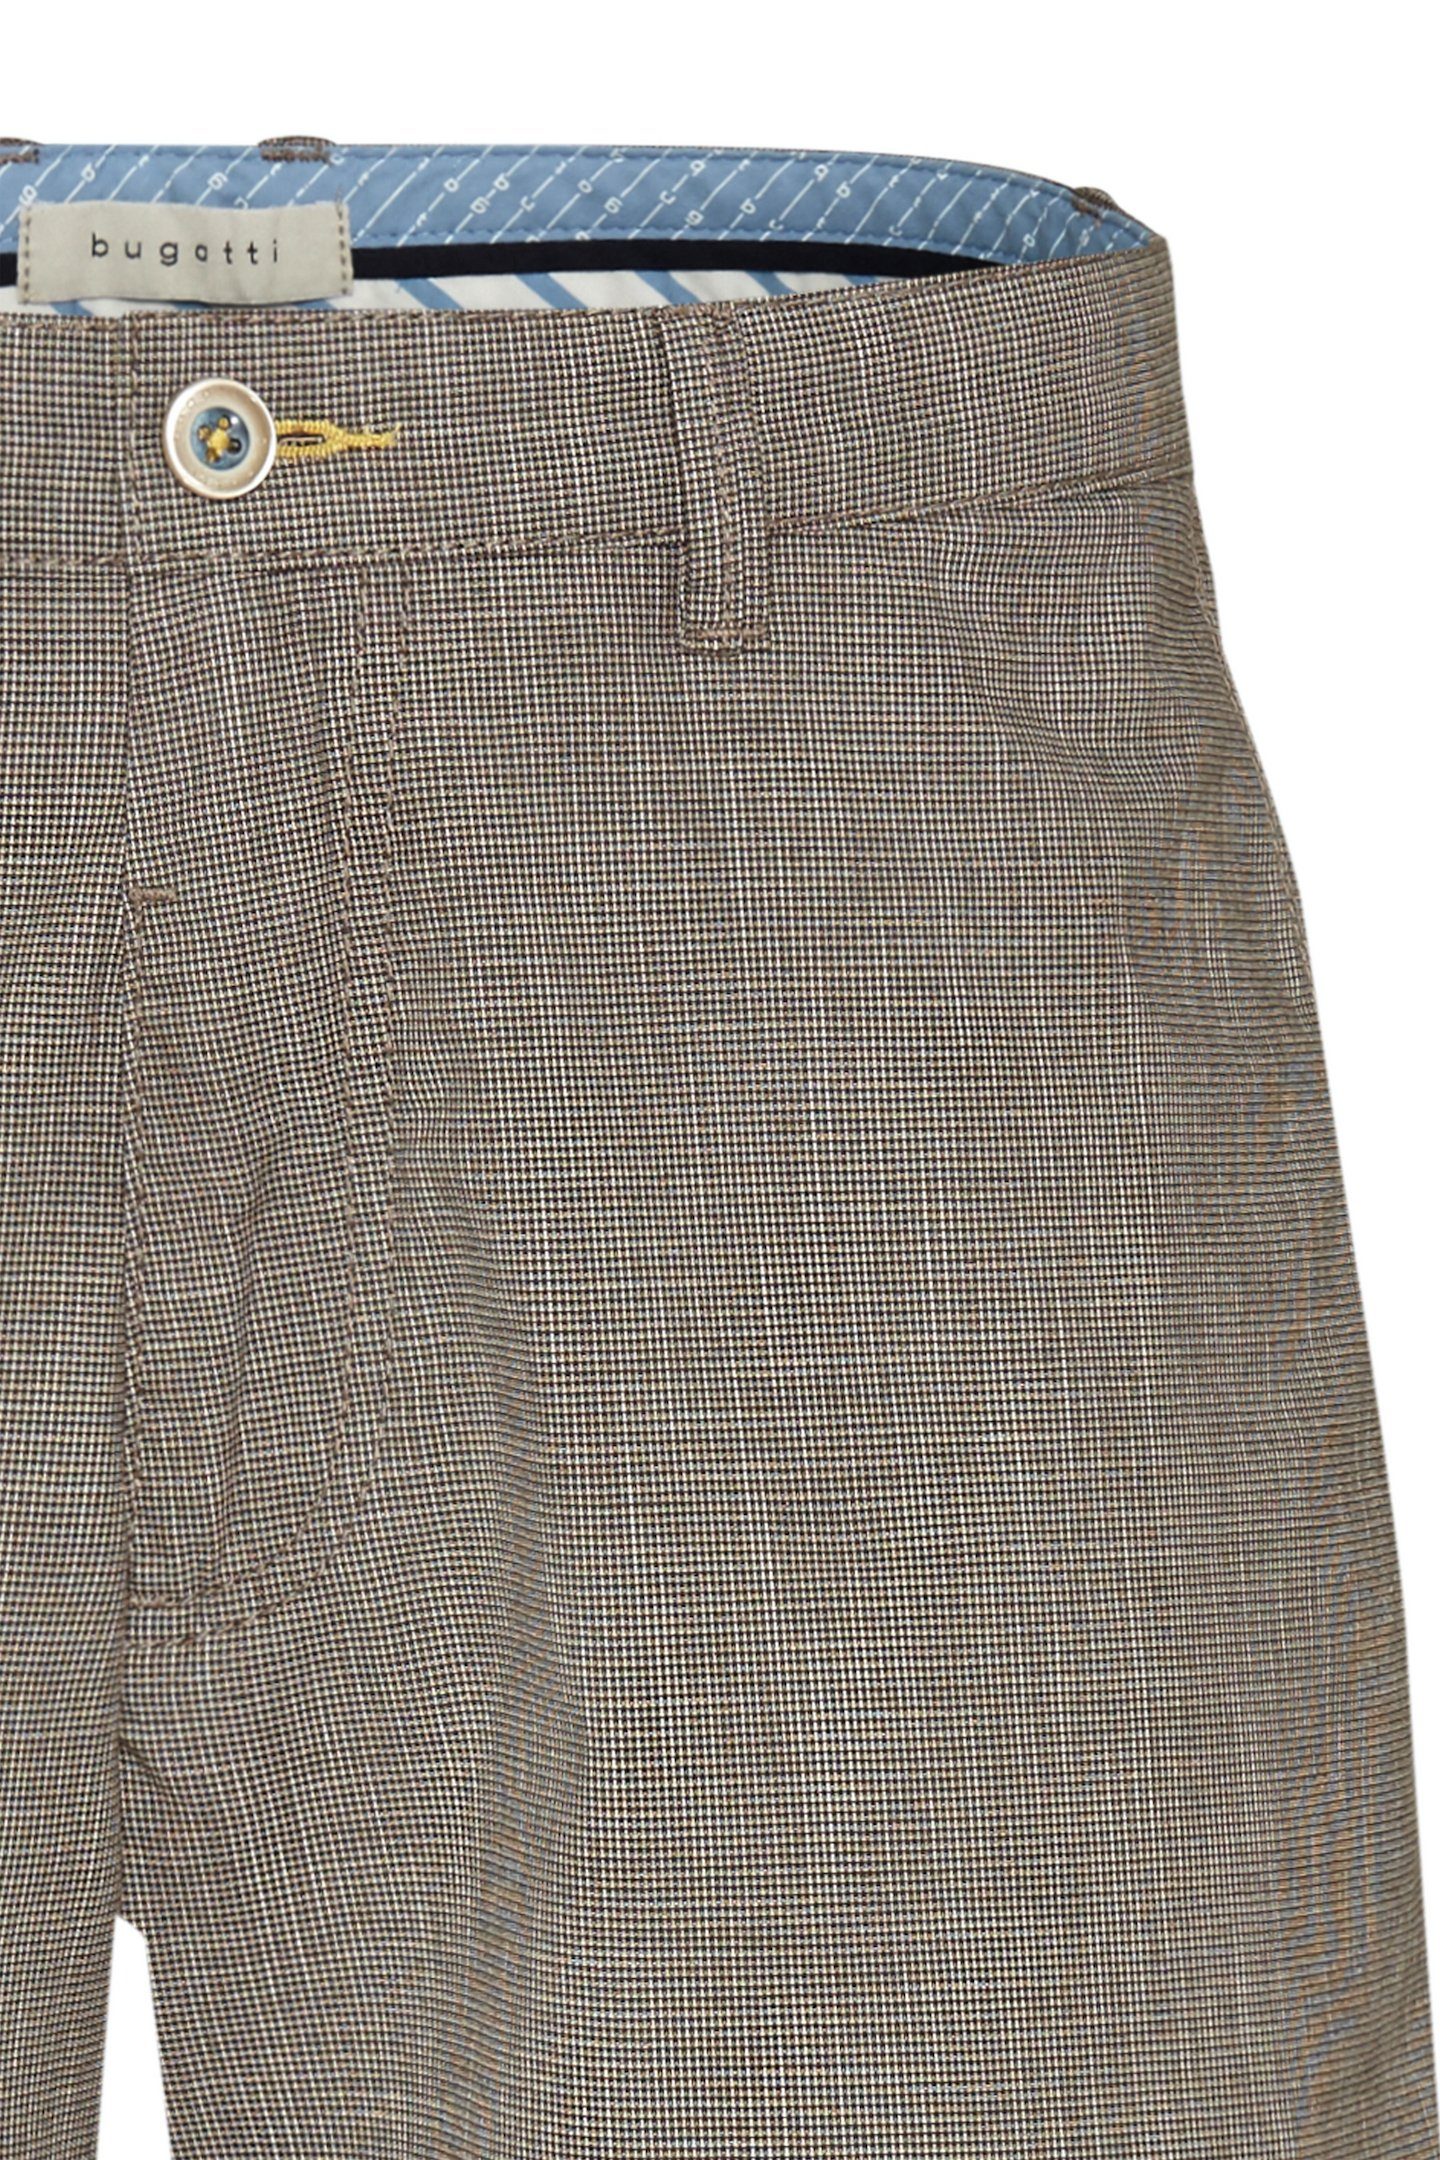 bugatti Shorts in einem Leinen-Look taupe